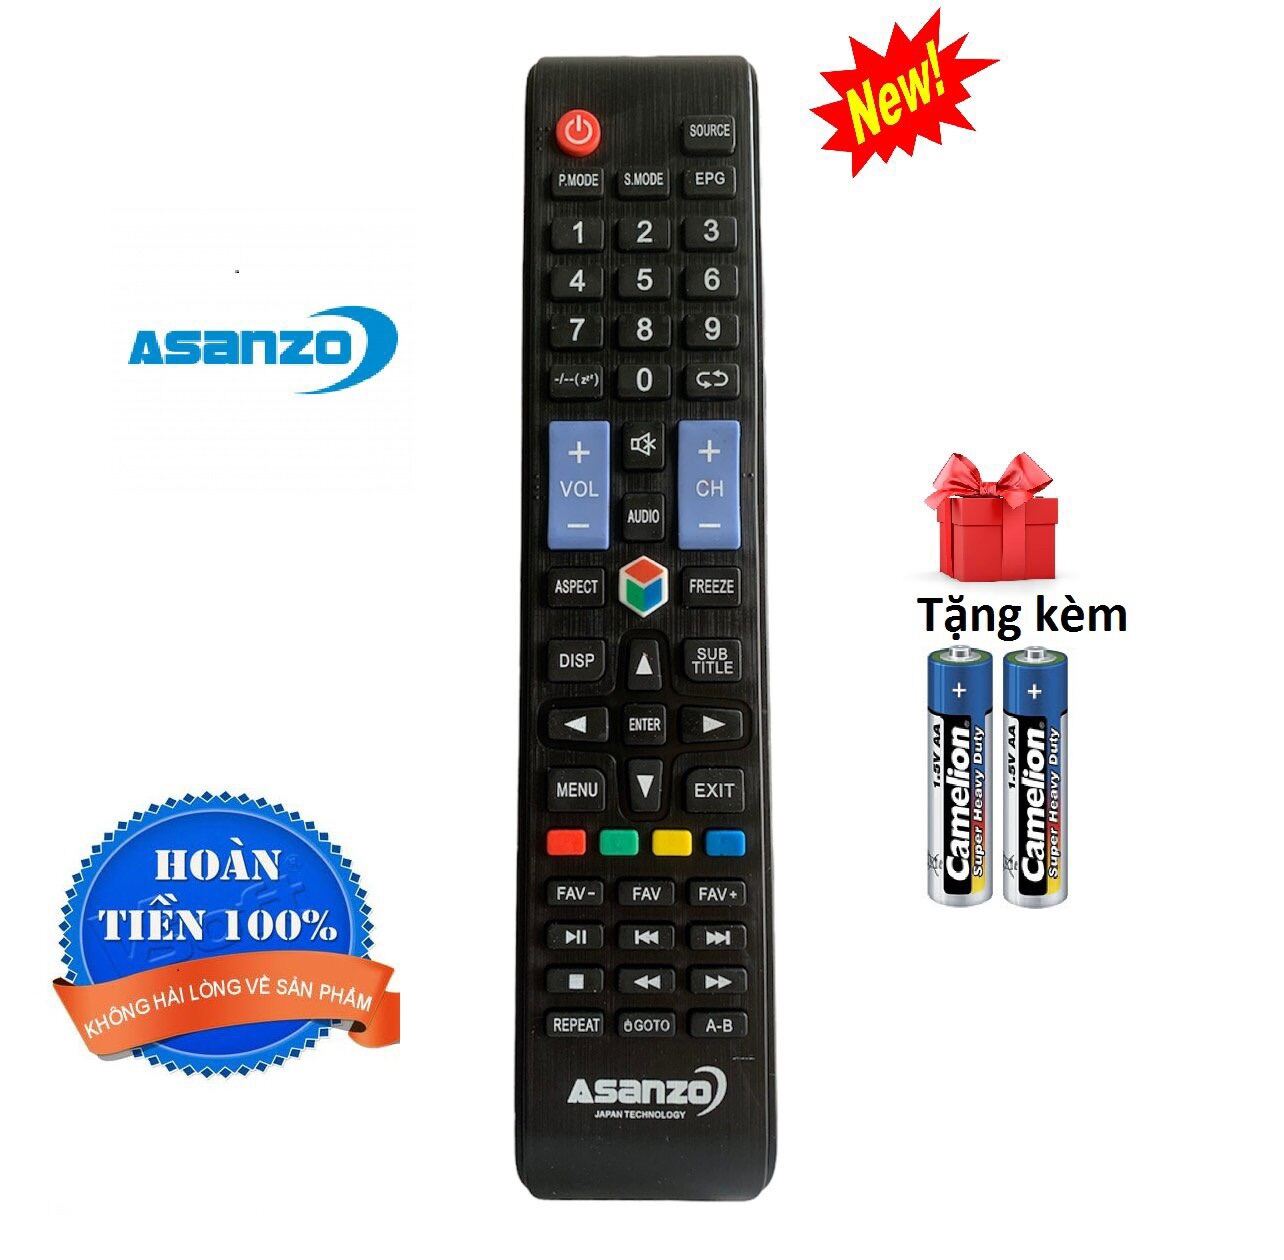 Bảng giá Điều khiển tivi Asanzo Smart TV - Chính hãng [ tặng kèm pin ]